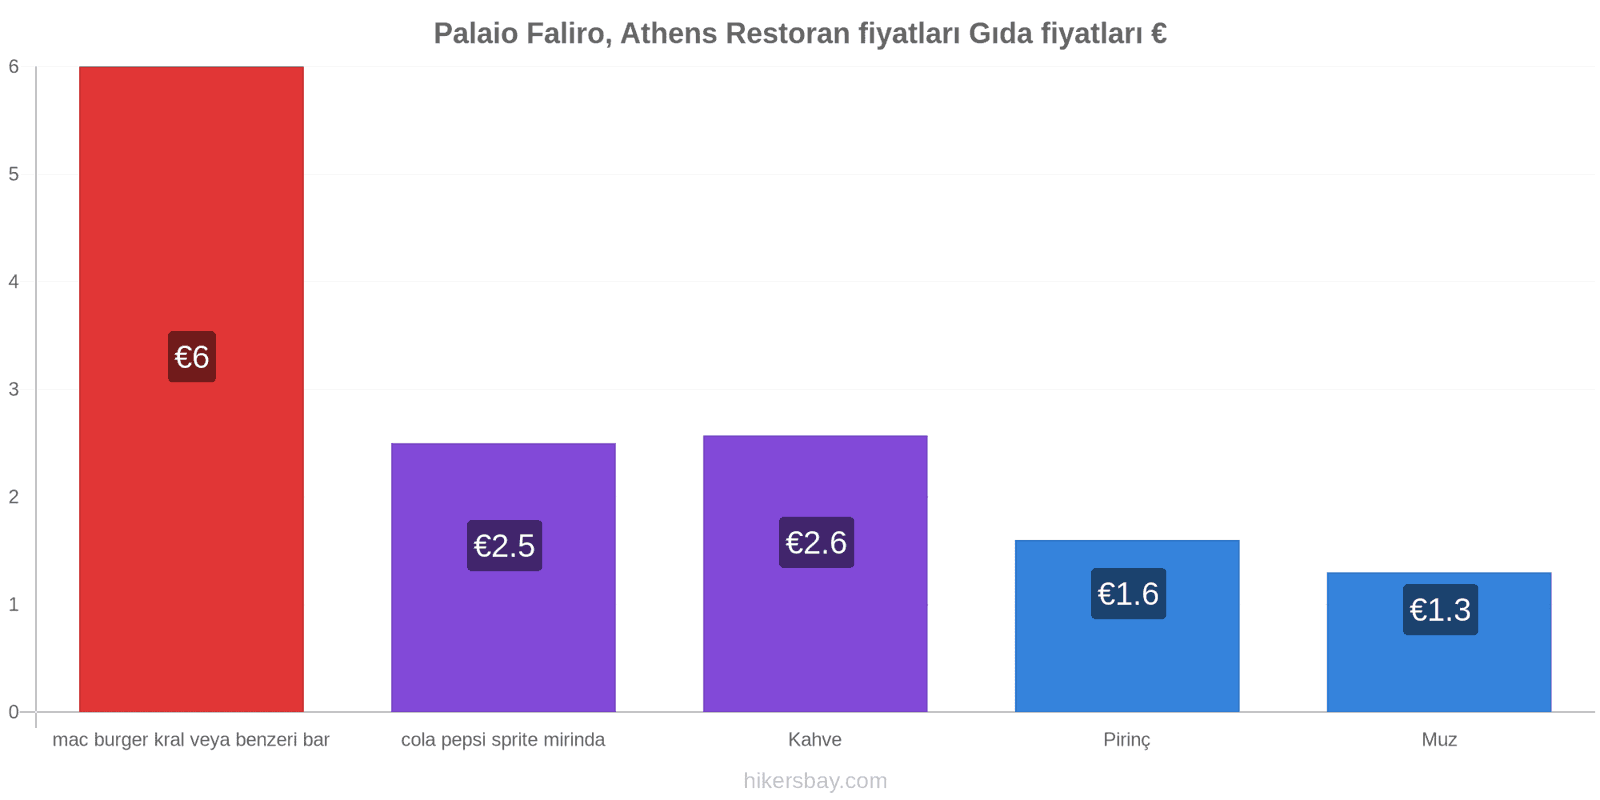 Palaio Faliro, Athens fiyat değişiklikleri hikersbay.com